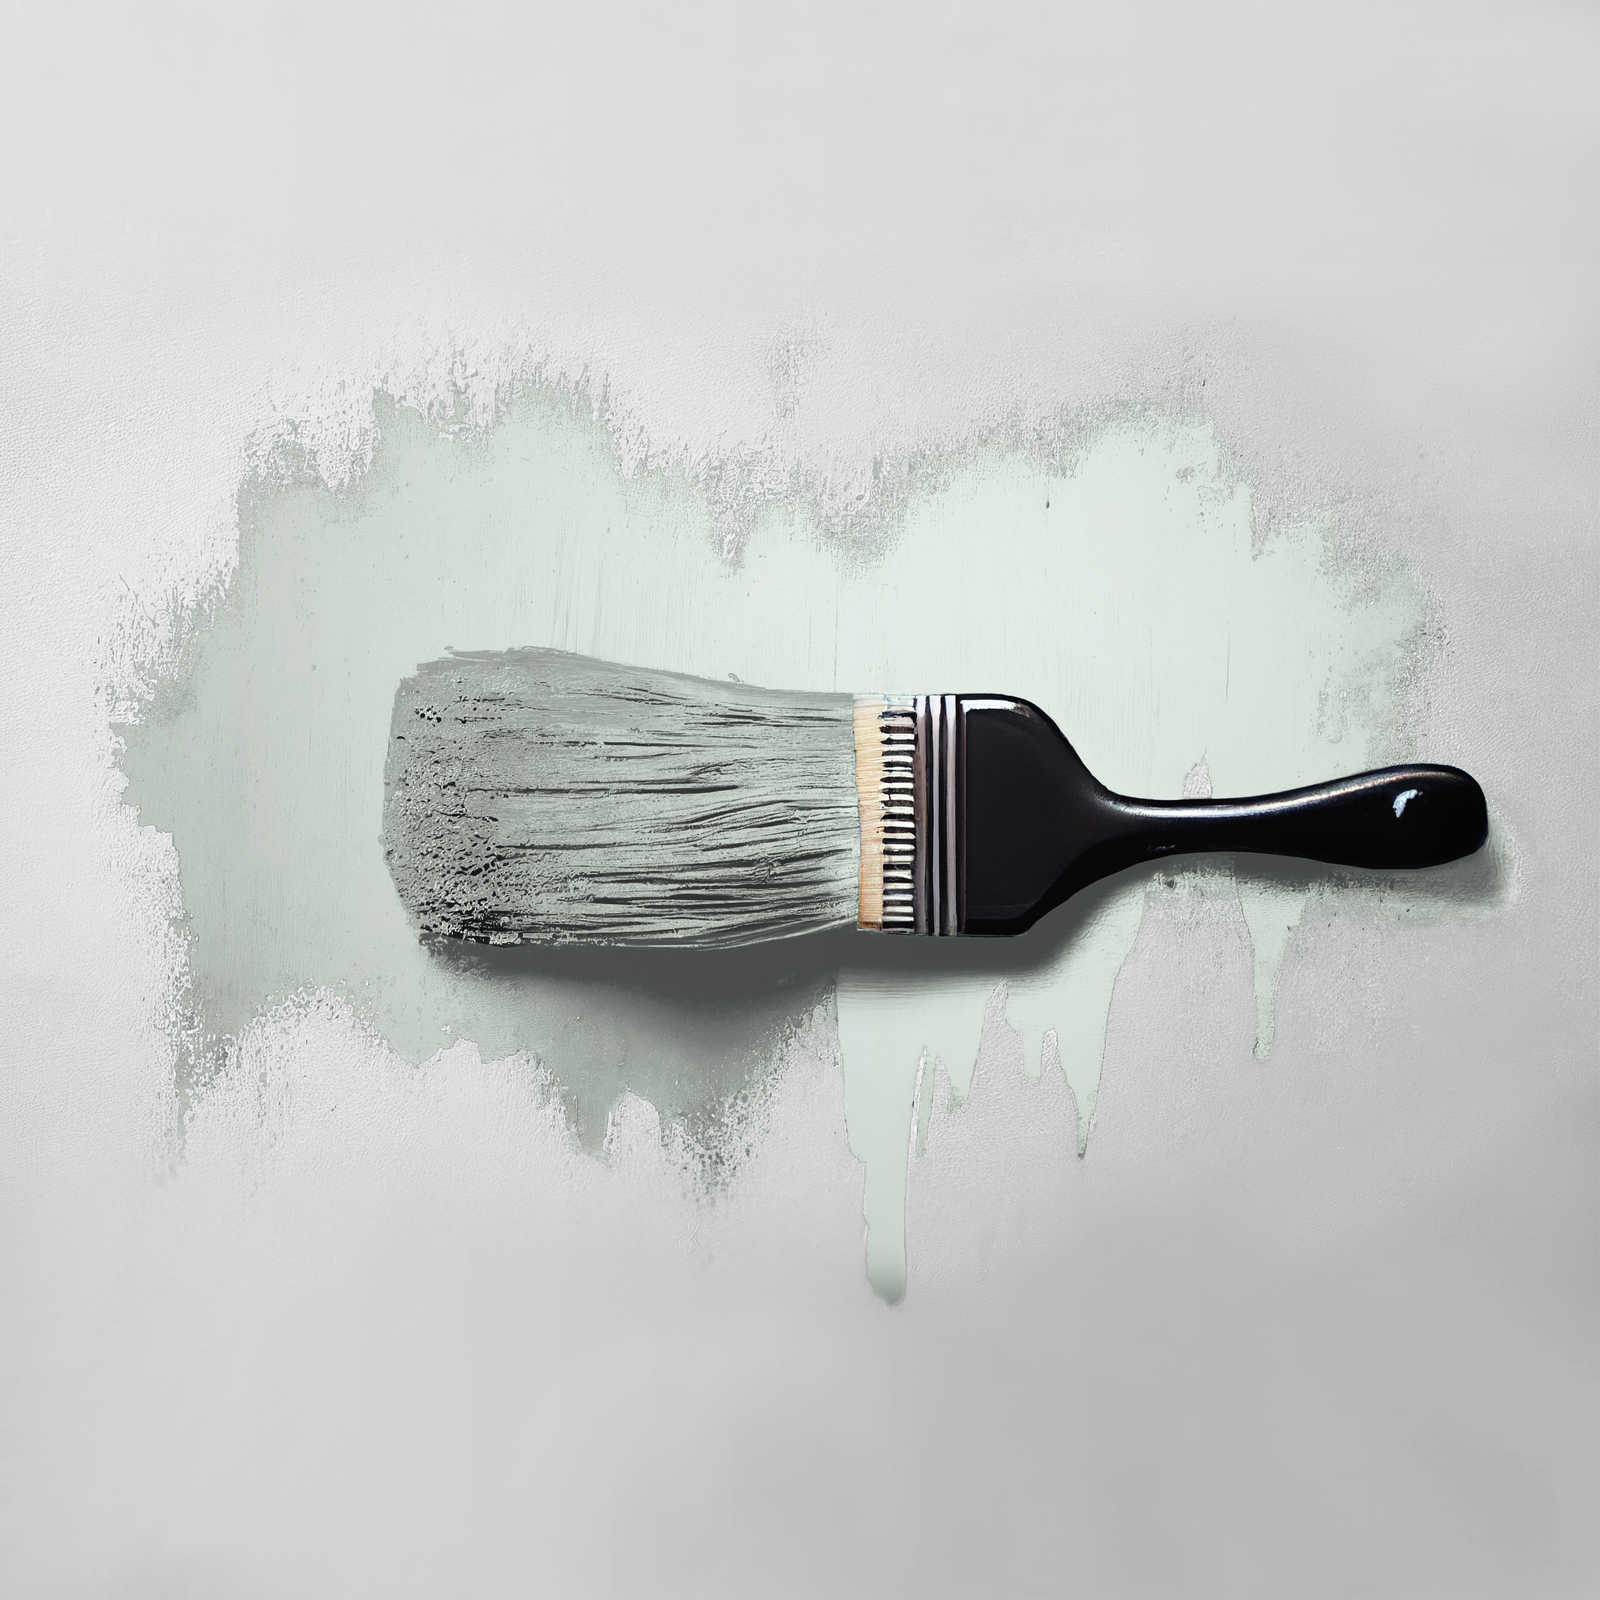             Wall Paint TCK3000 »Perky Peppermint« in a light mint shade – 2.5 litre
        